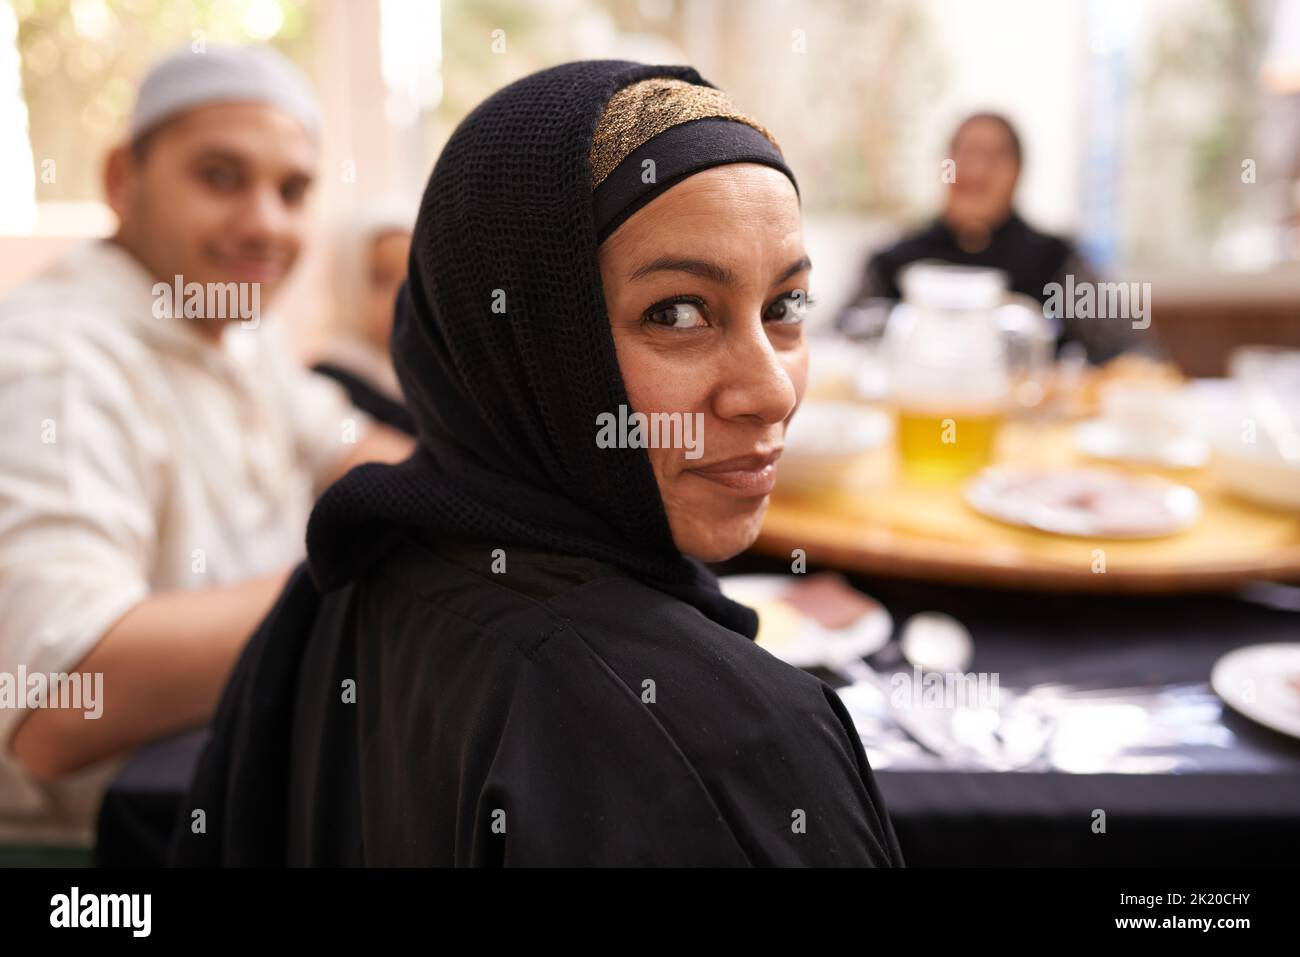 Wir essen immer als Familie. Eine muslimische Familie, die zusammen isst. Stockfoto